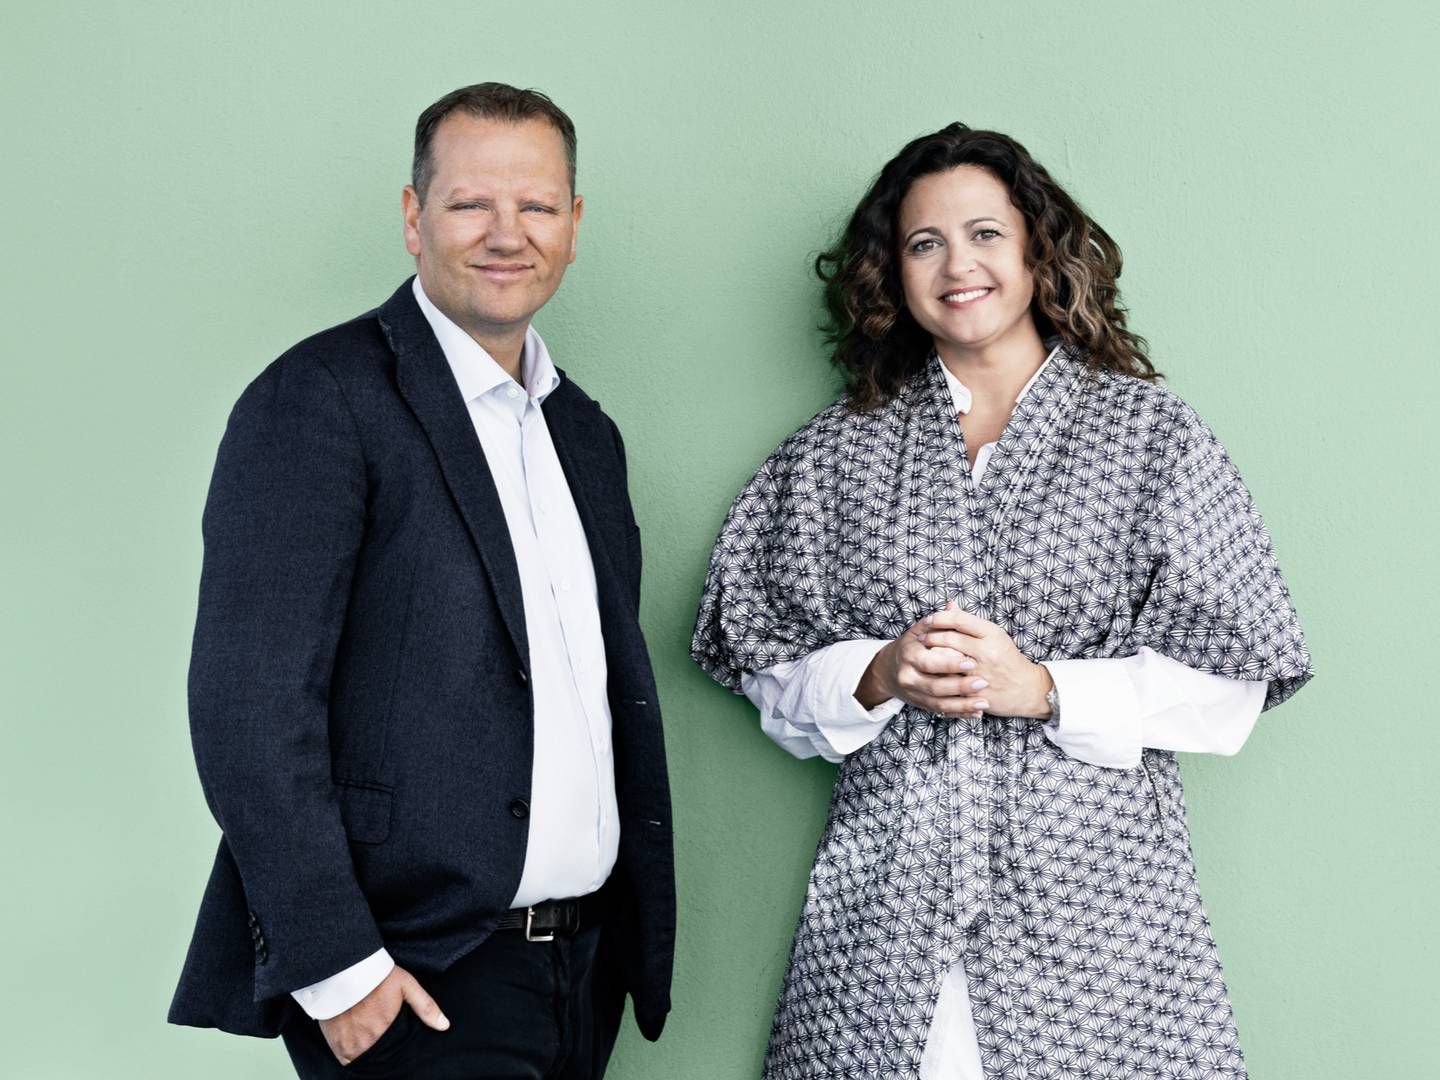 Jens Holm, adm. direktør hos Concept X, og Lisbet Røge Jensen, kommerciel direktør i Berlingske Media har både et salgspartnerskab og fælles planer om en ny selvbetjeningsløsning klar til kampen om annoncekronerne.